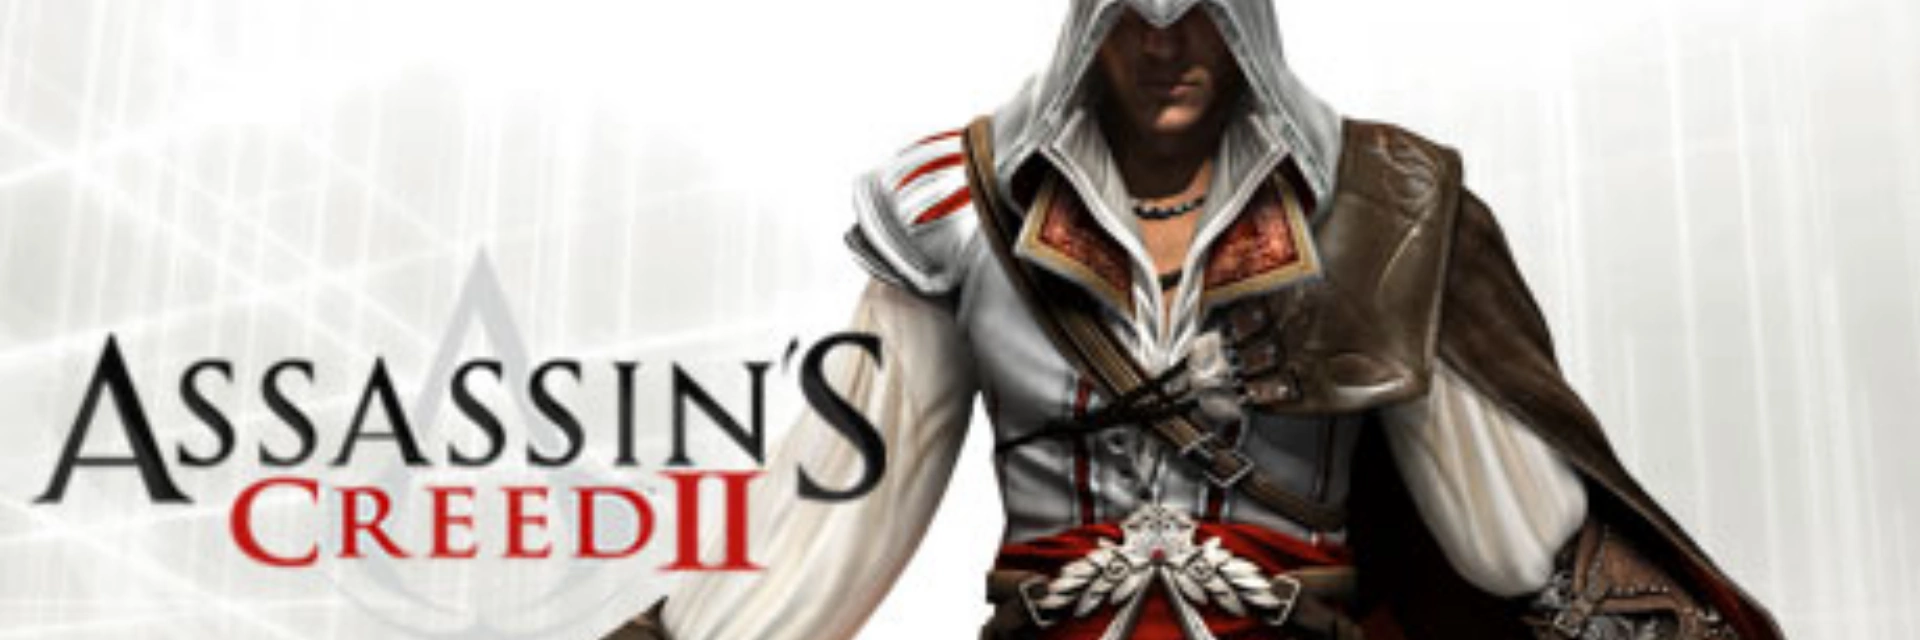 Assassins.Creed2 .banner1